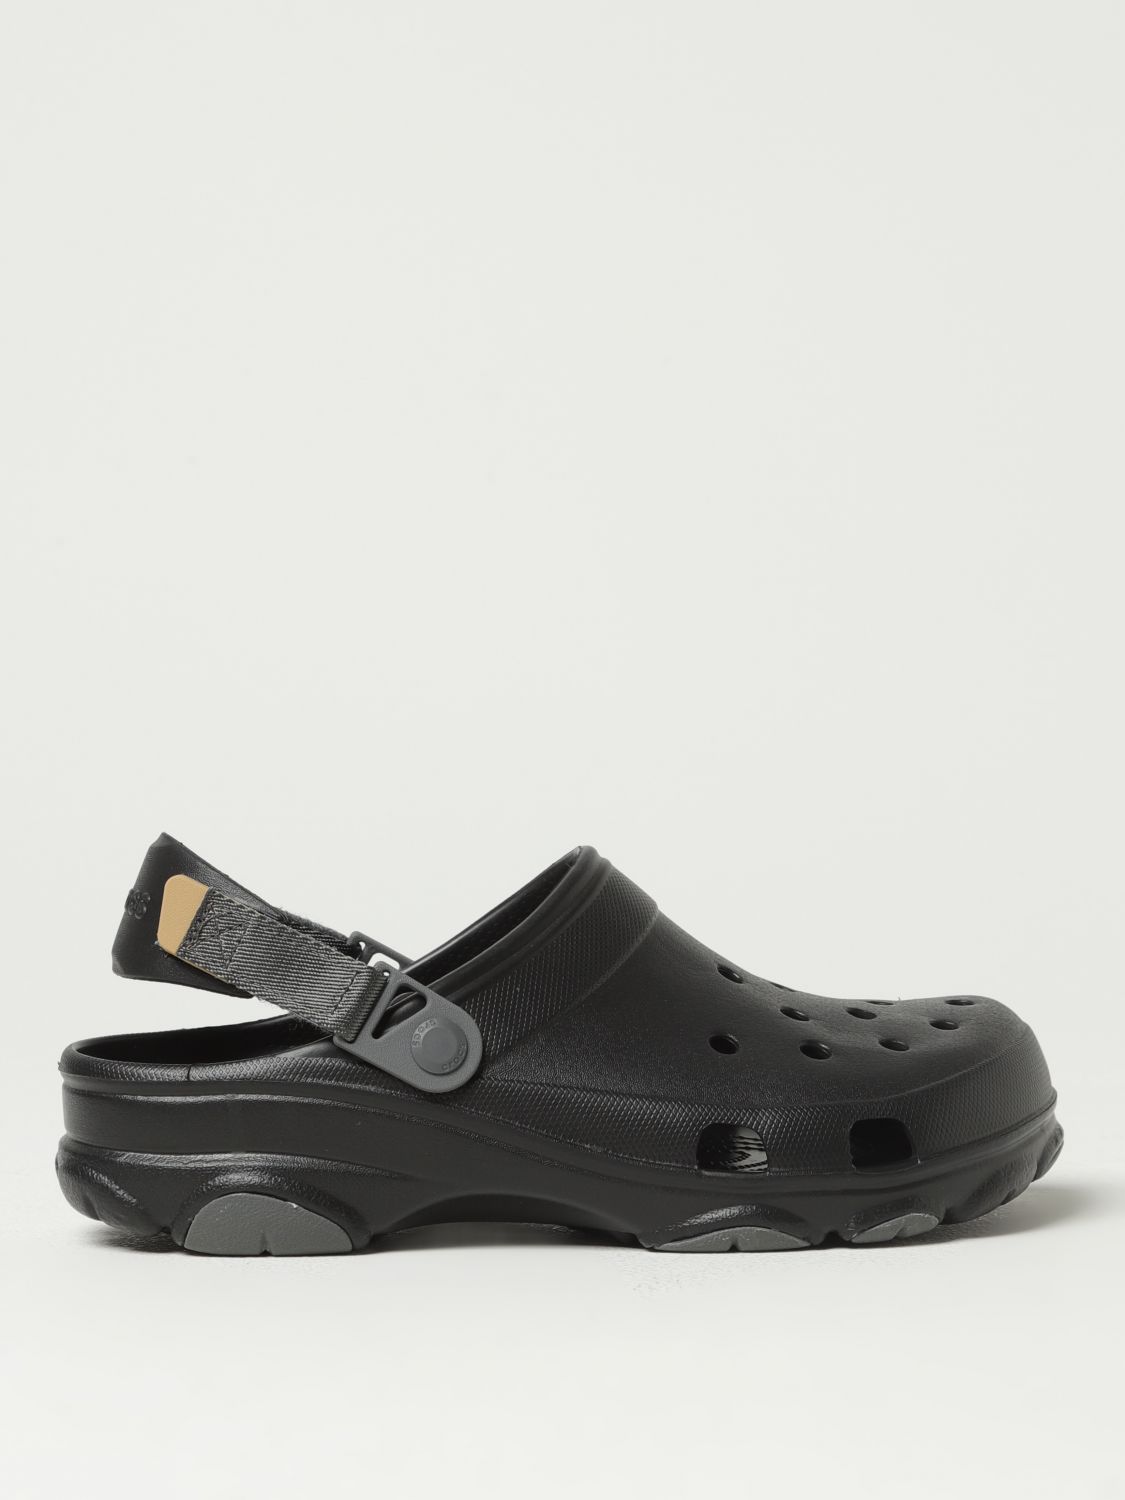 Crocs Sandals  Men Colour Black